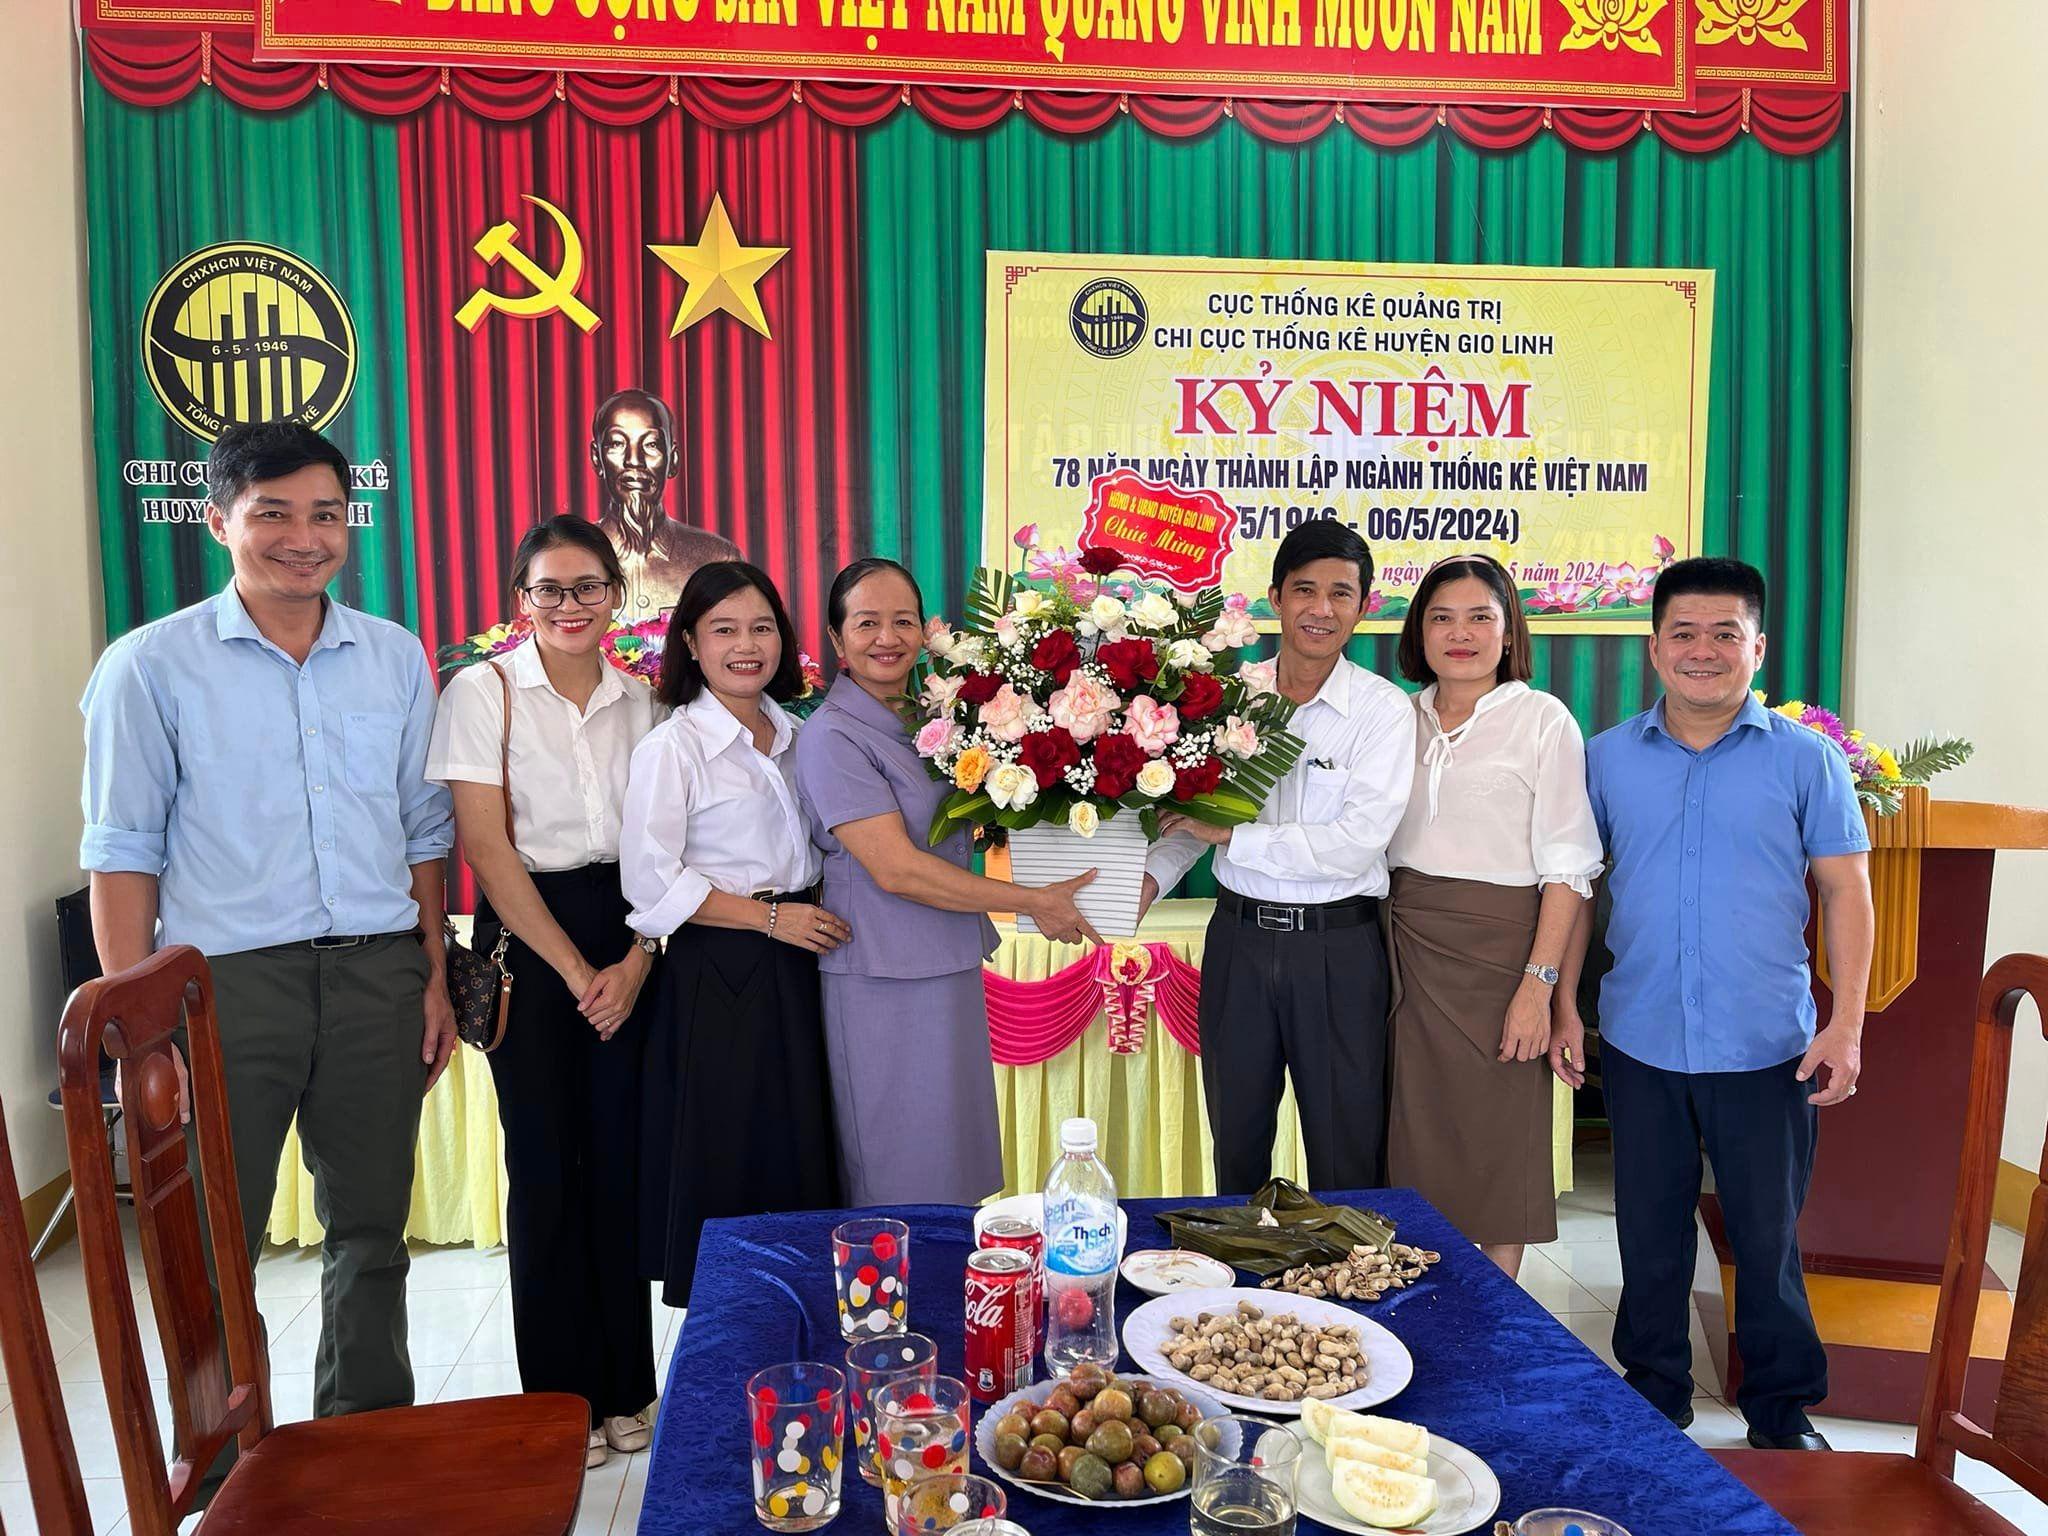 Lãnh đạo huyện Gio Linh chúc mừng 78 năm Ngày thành lập ngành Thống kê Việt Nam.